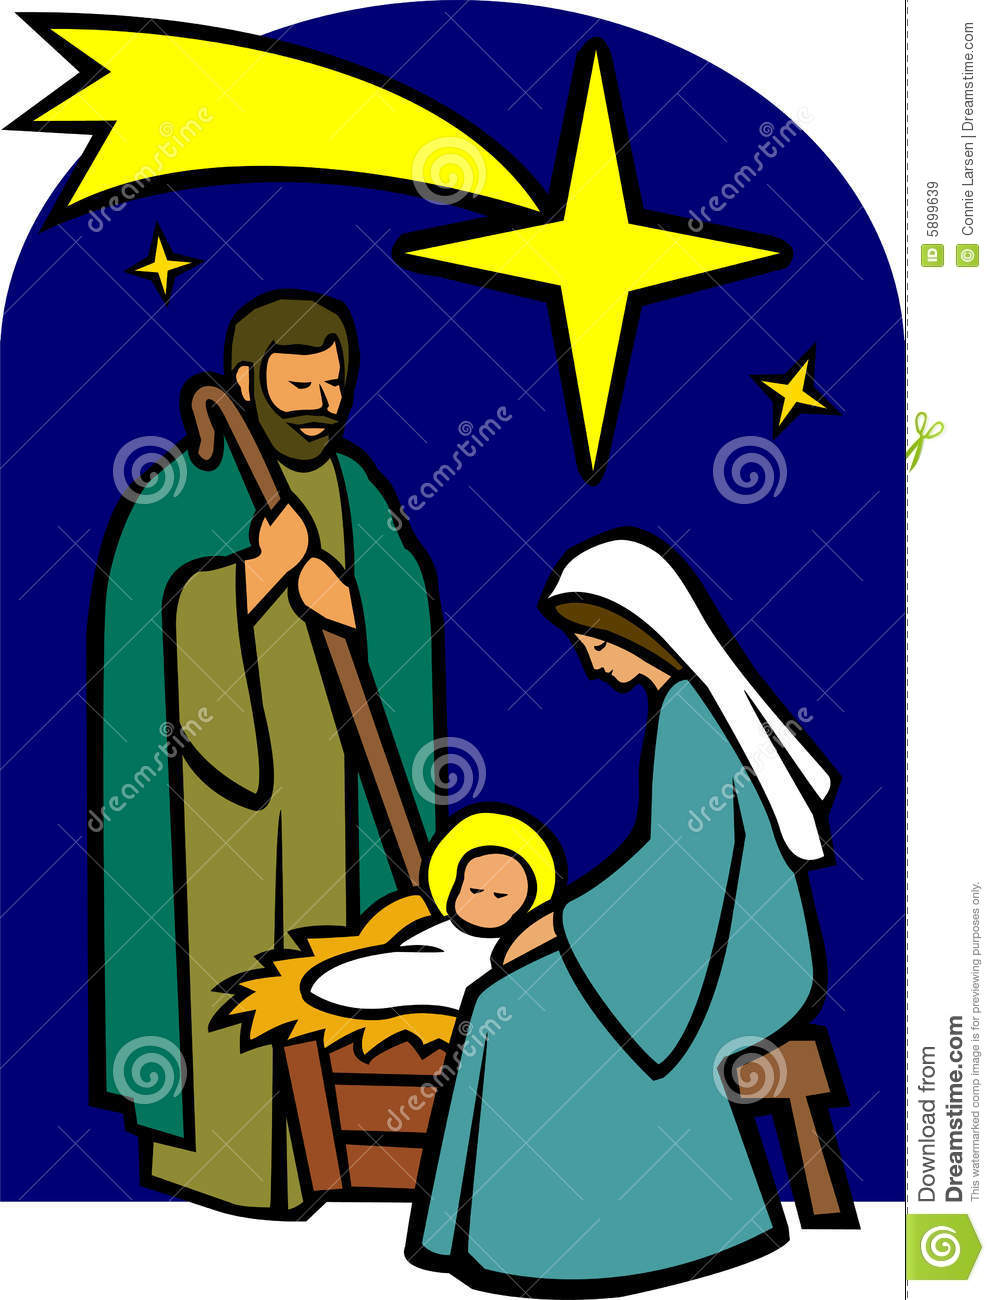 Holy Family Nativity Eps Royalty Free Stock Images   Image  5899639